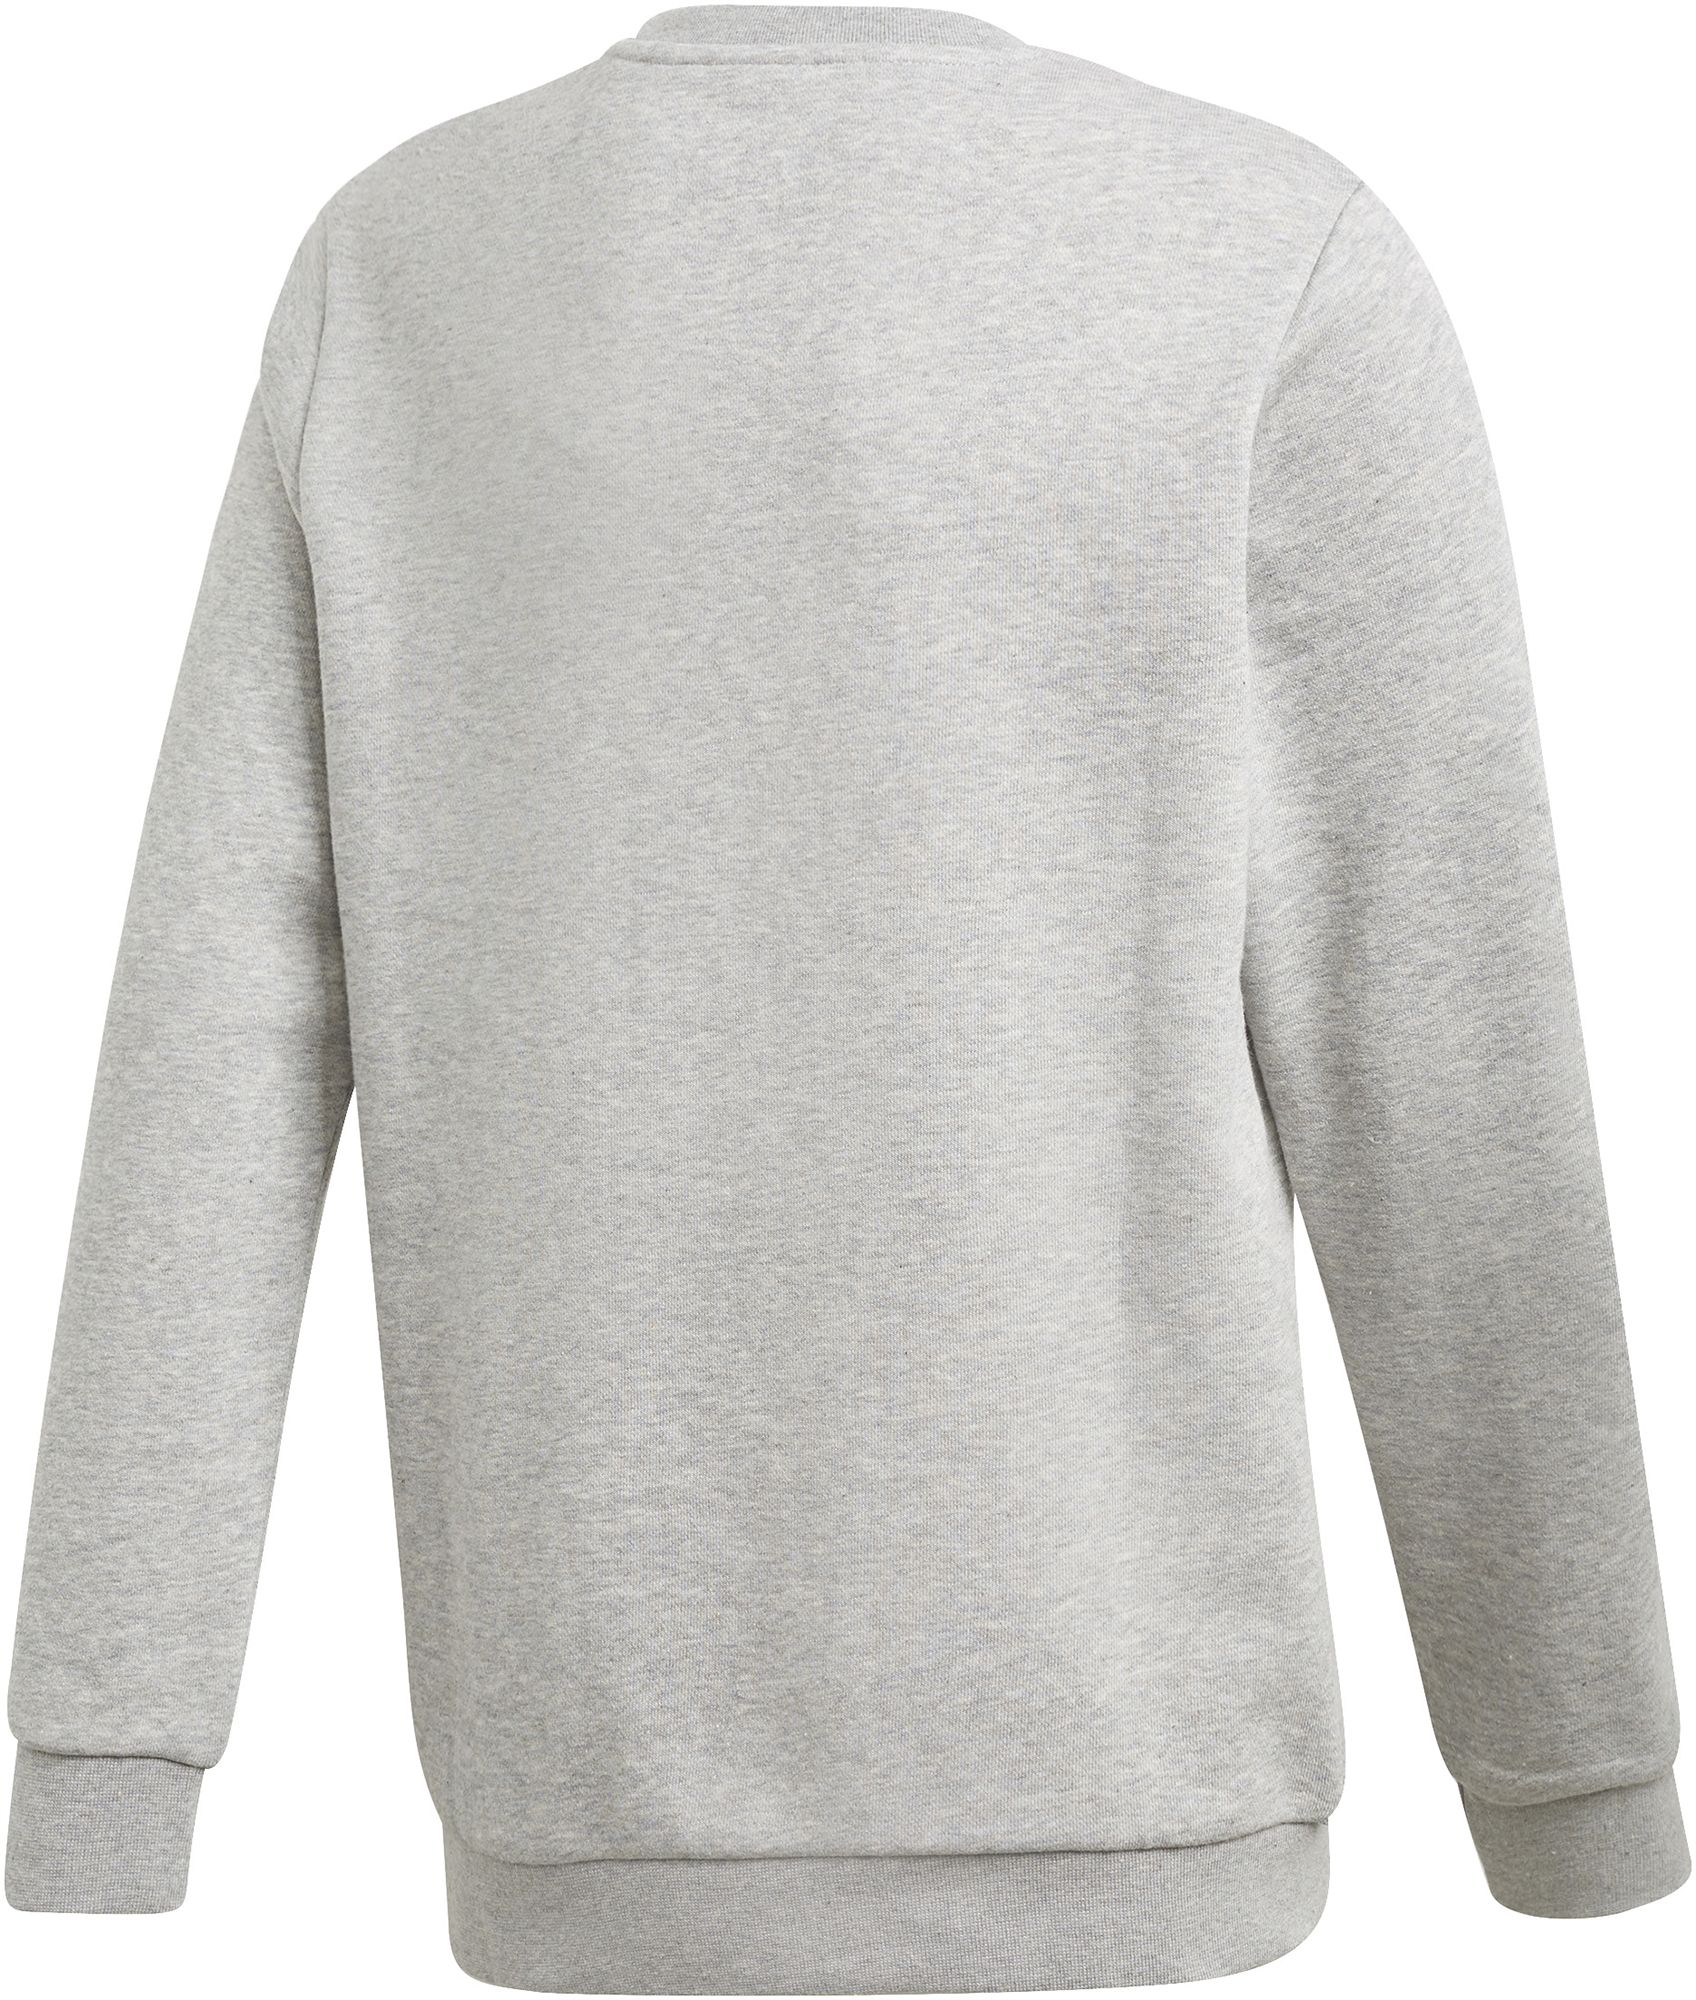 adidas Originals Girls' Adicolor Classic Crewneck Pullover Sweatshirt